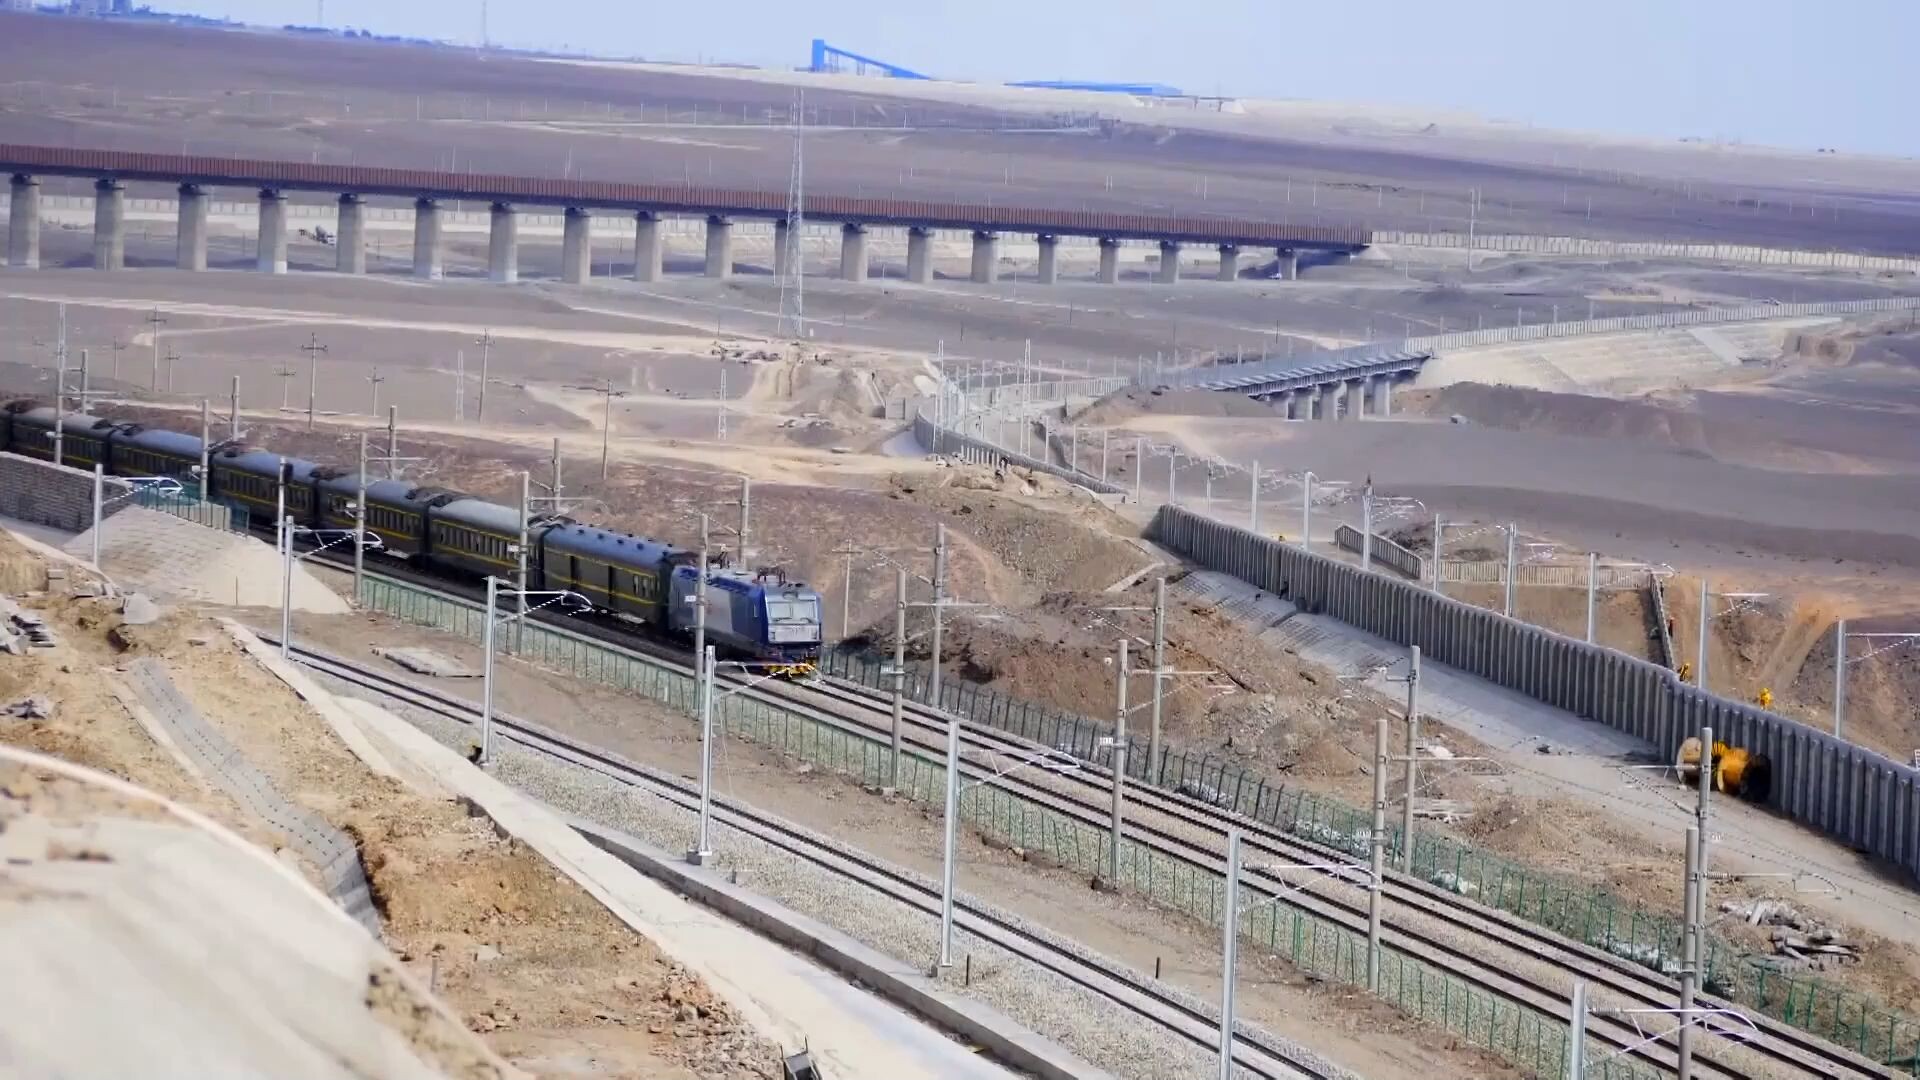 GLOBALink : 'รถไฟความเร็วต่ำ' ราคาประหยัดของชาวบ้านซินเจียง